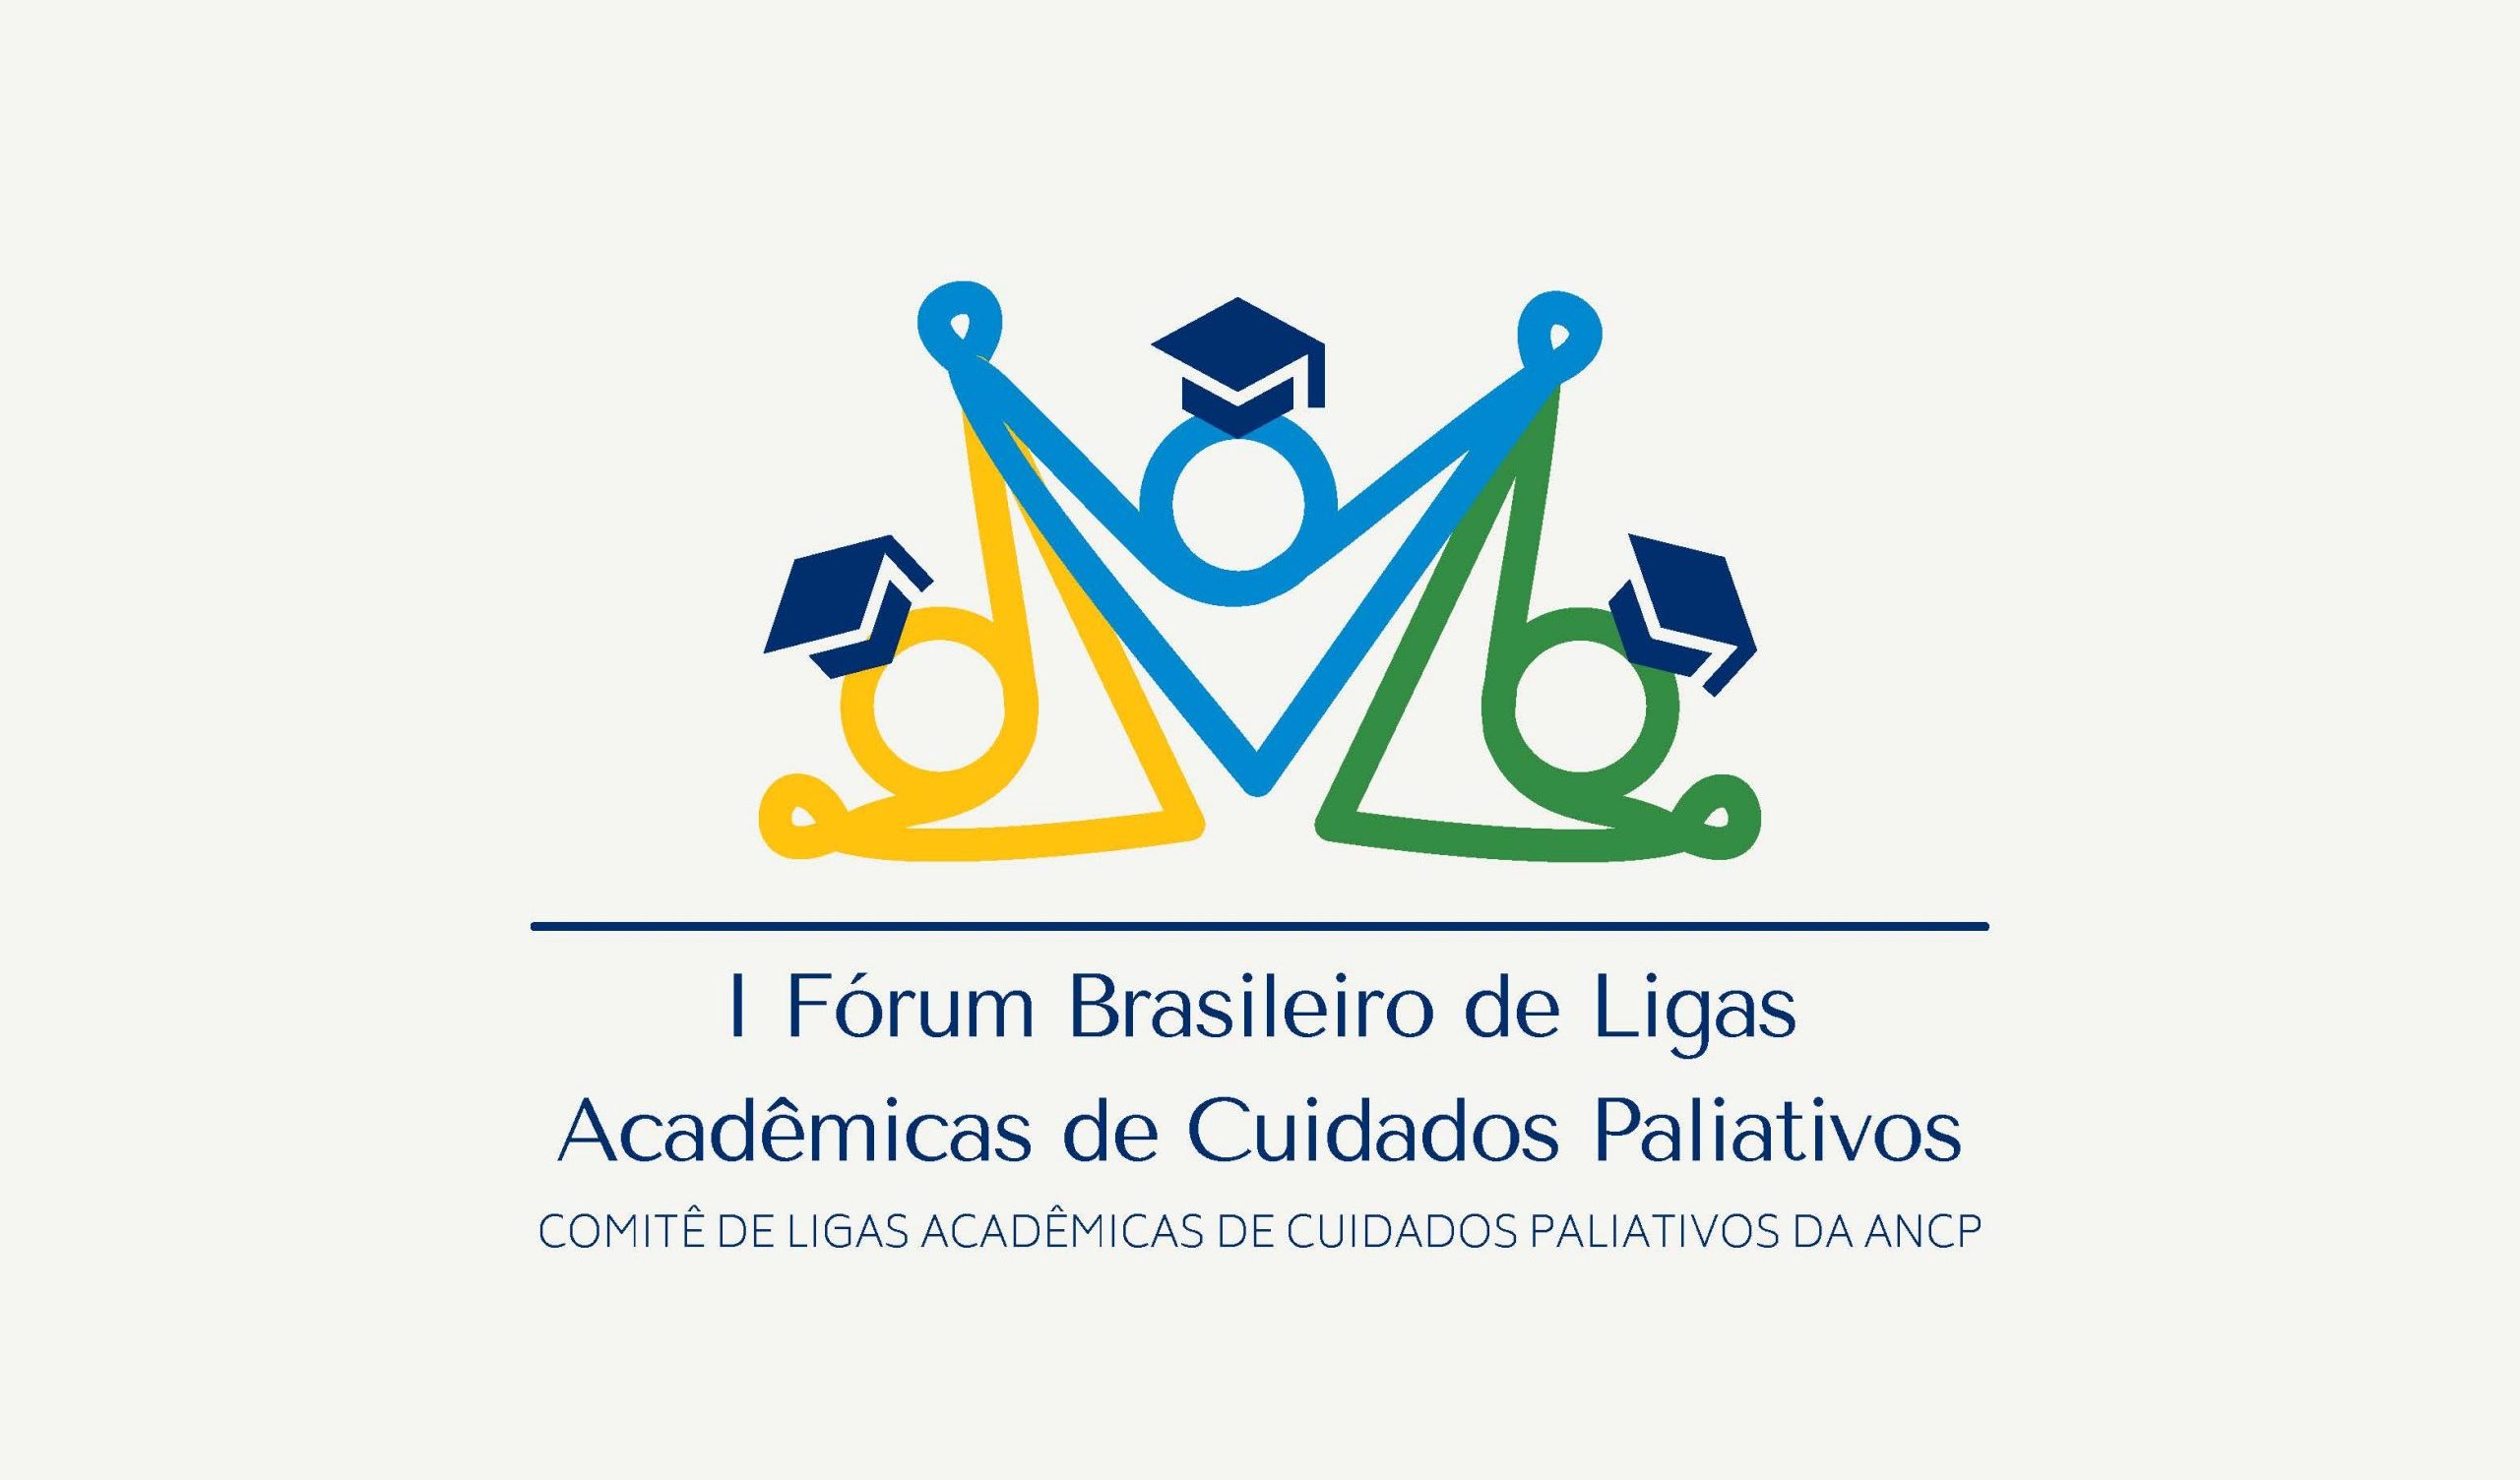 I Fórum Brasileiro de Ligas Acadêmicas de Cuidados Paliativos